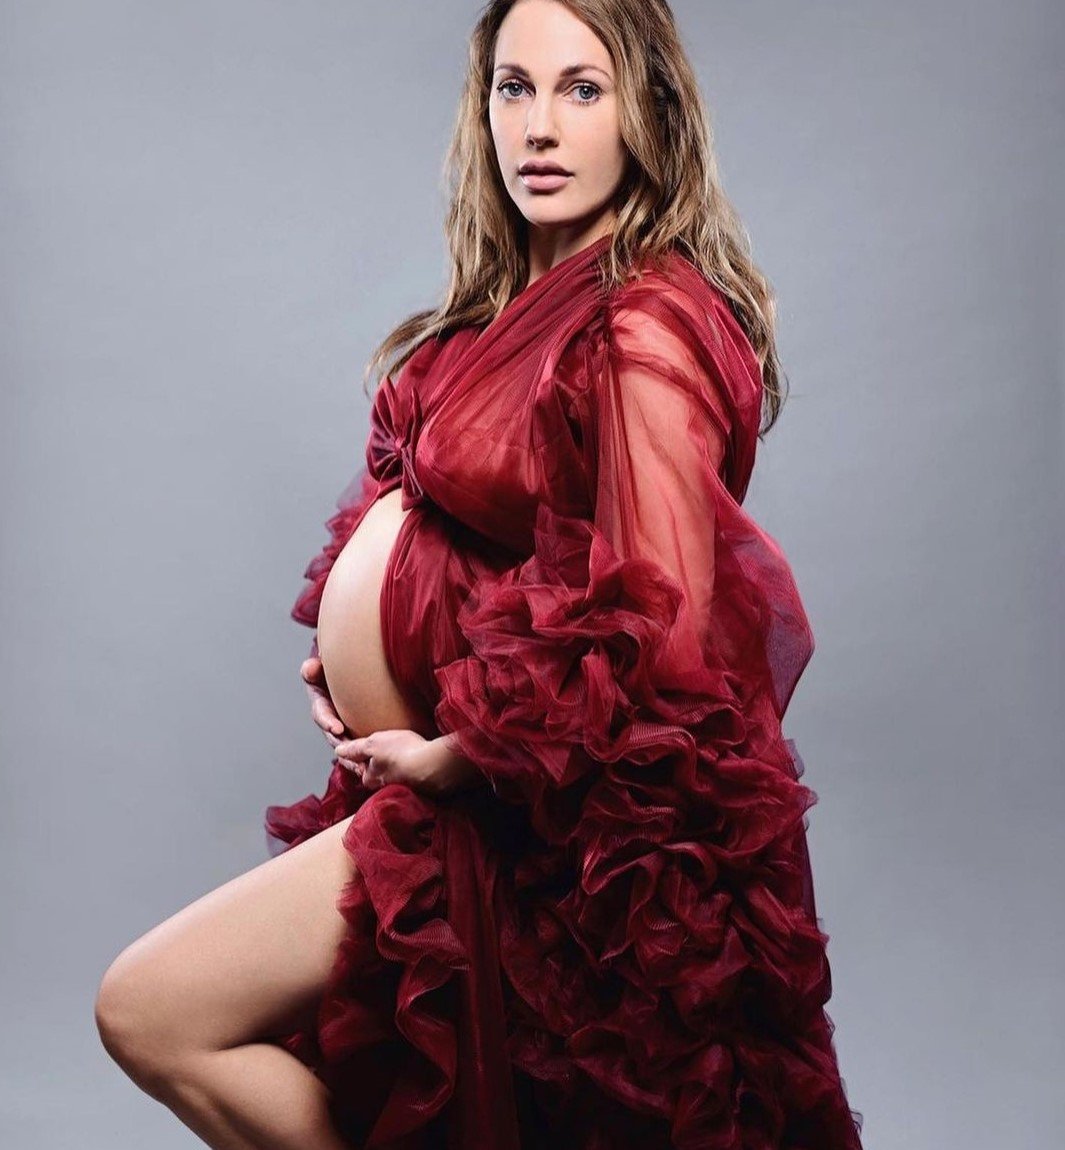 Беременная Мерьем Узерли показала большой живот за считанные дни до родов